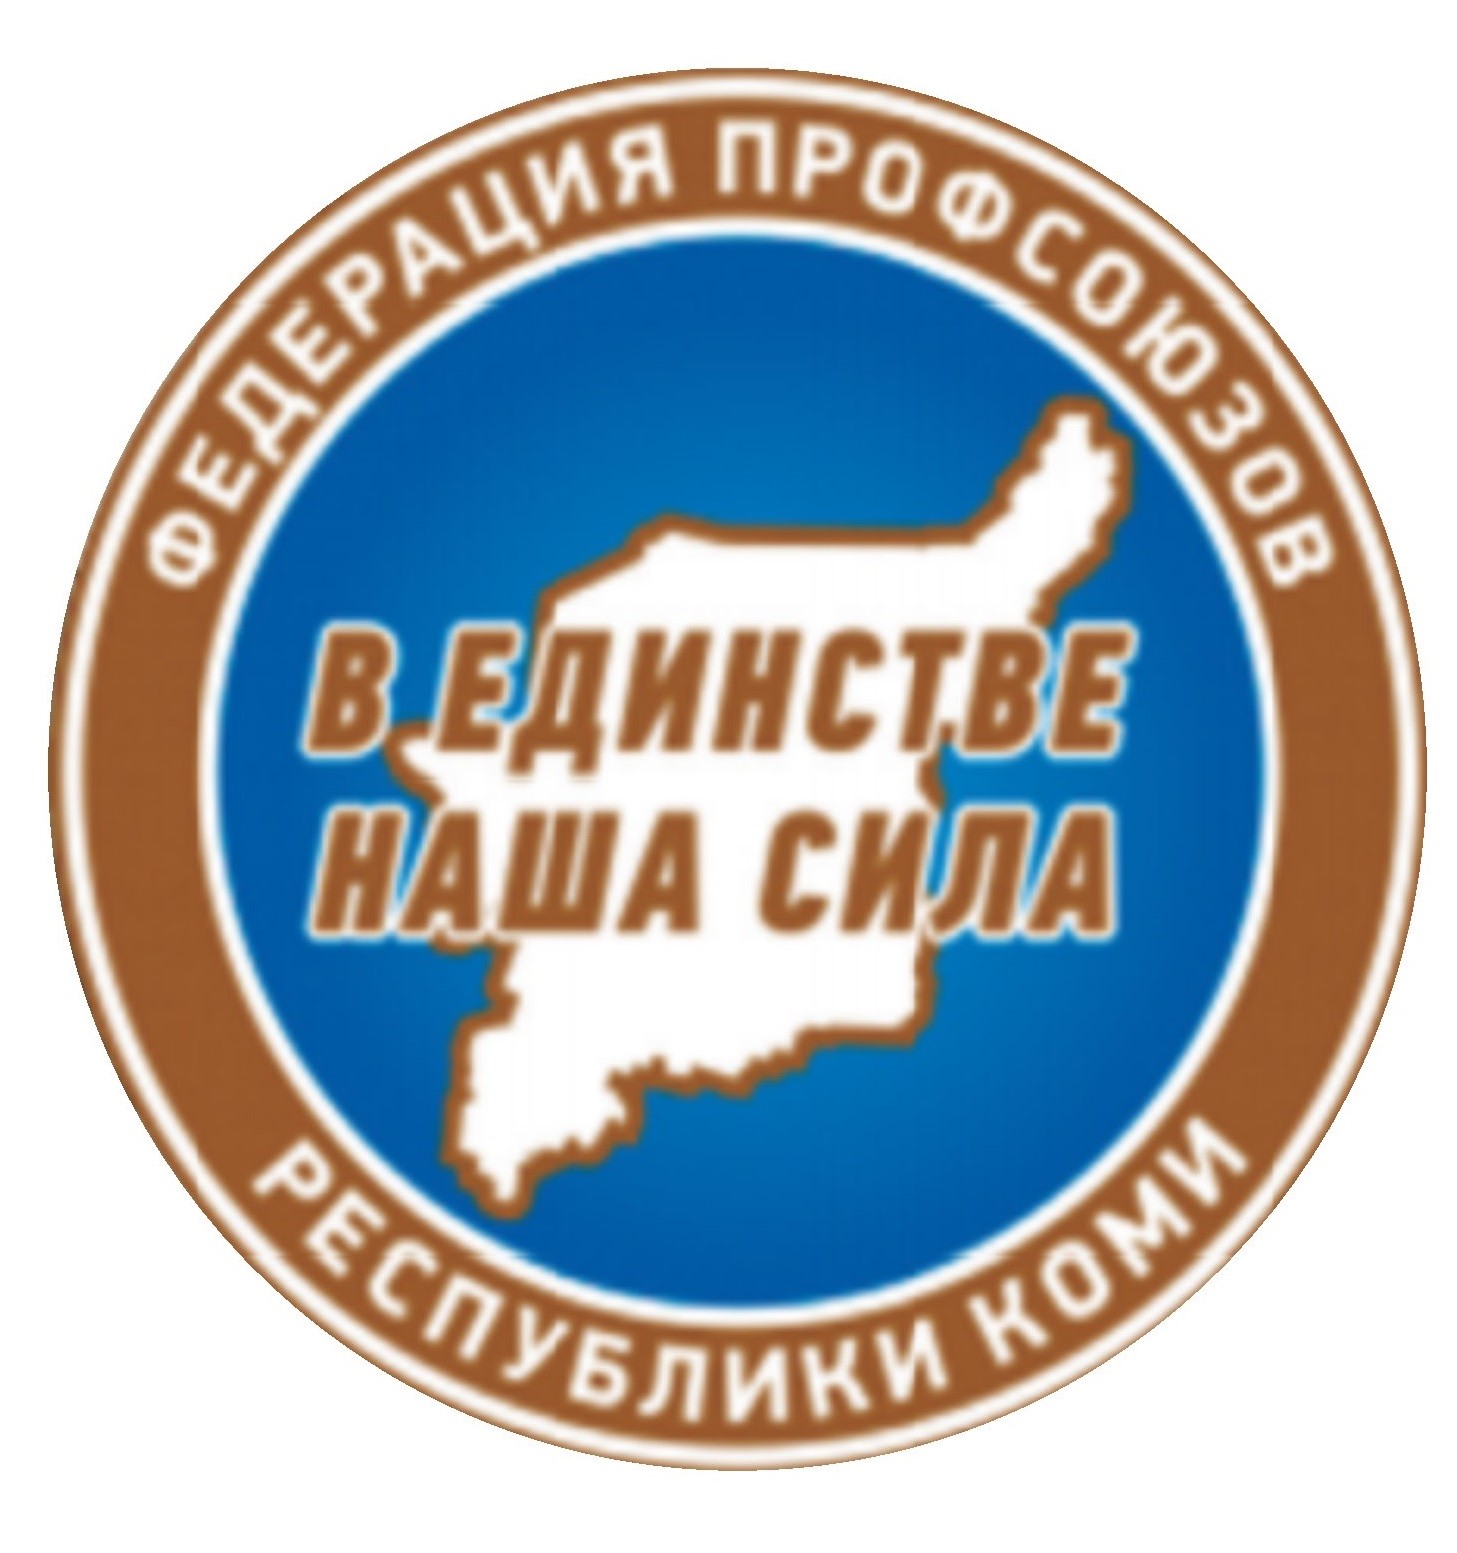 Профсоюзы Республики Коми: достойный труд и социальное партнерство